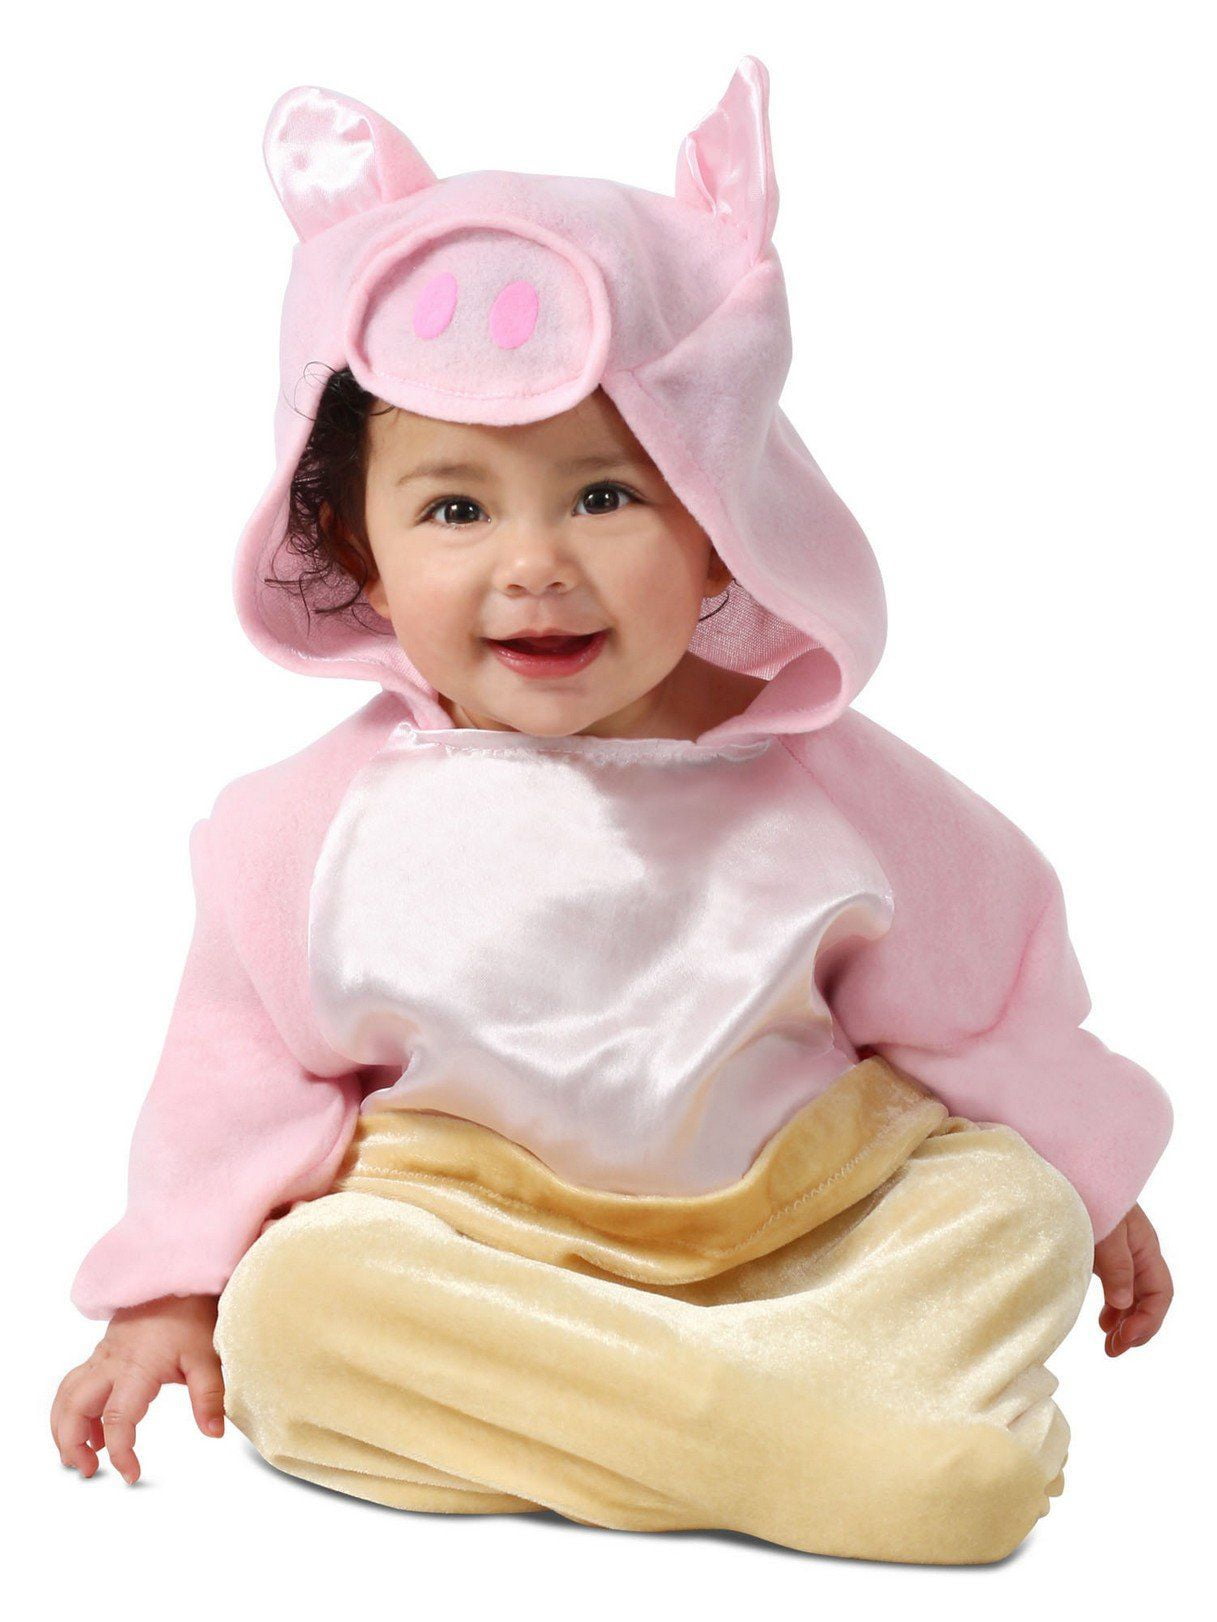 Infant Pig In A Blanket Costume Walmartcom Walmartcom